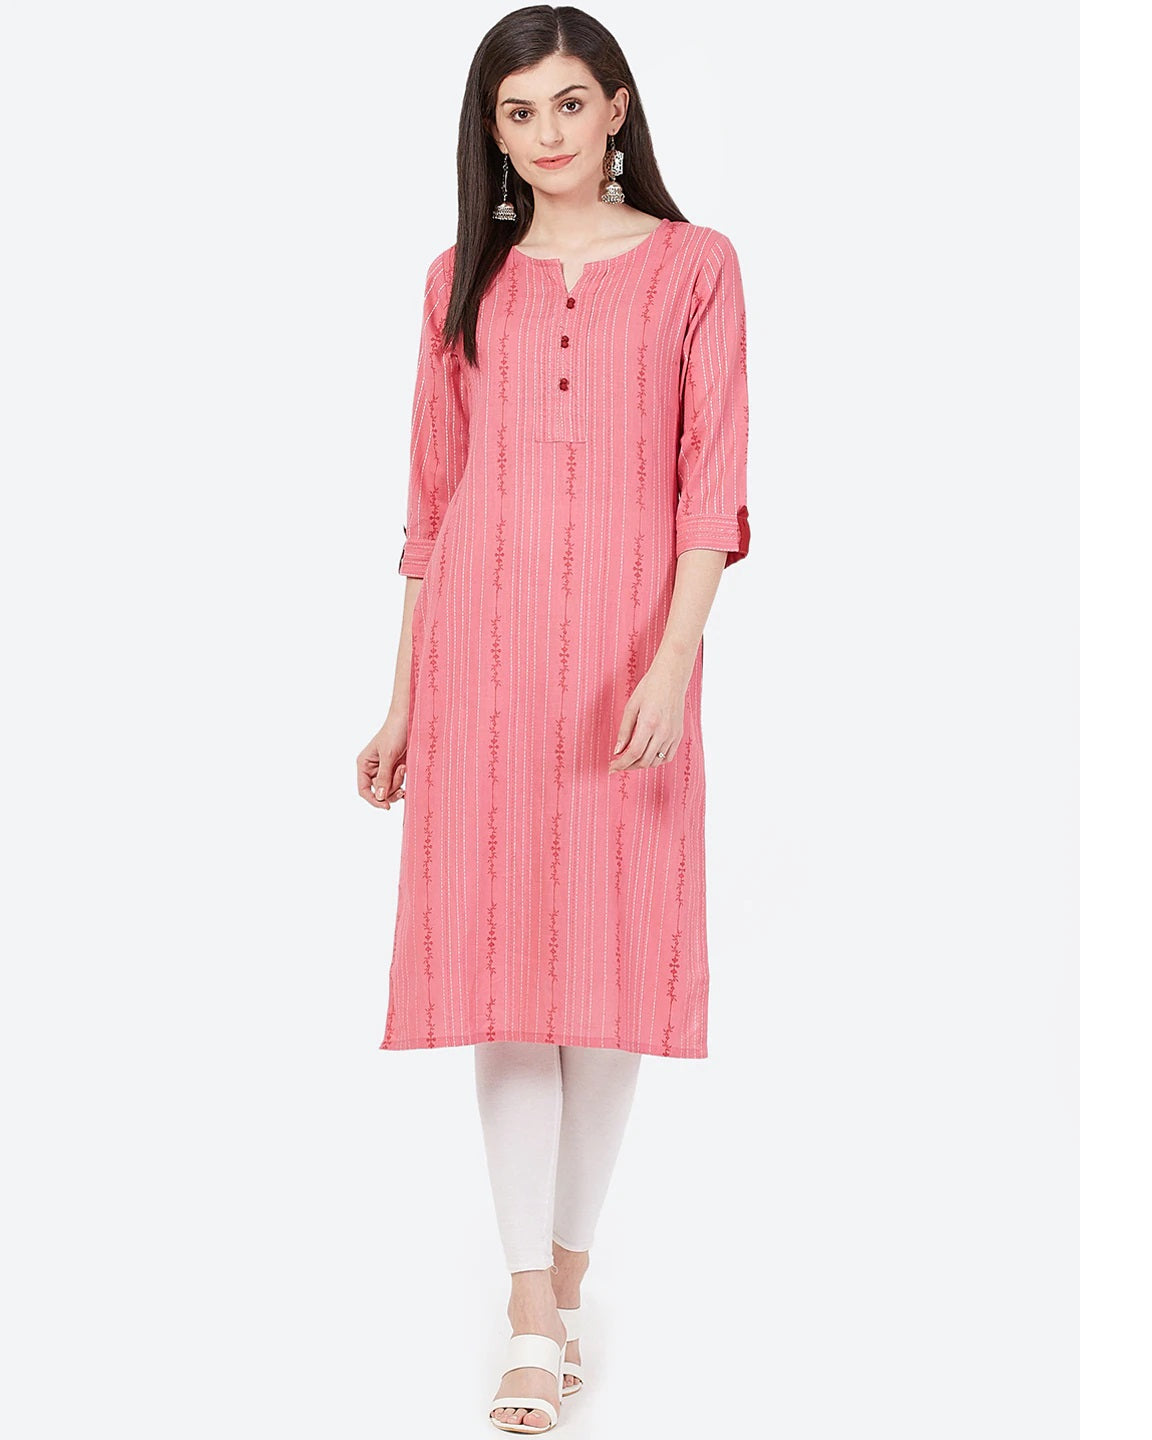 Women's Pink & White Striped Straight Kurta - Meeranshi